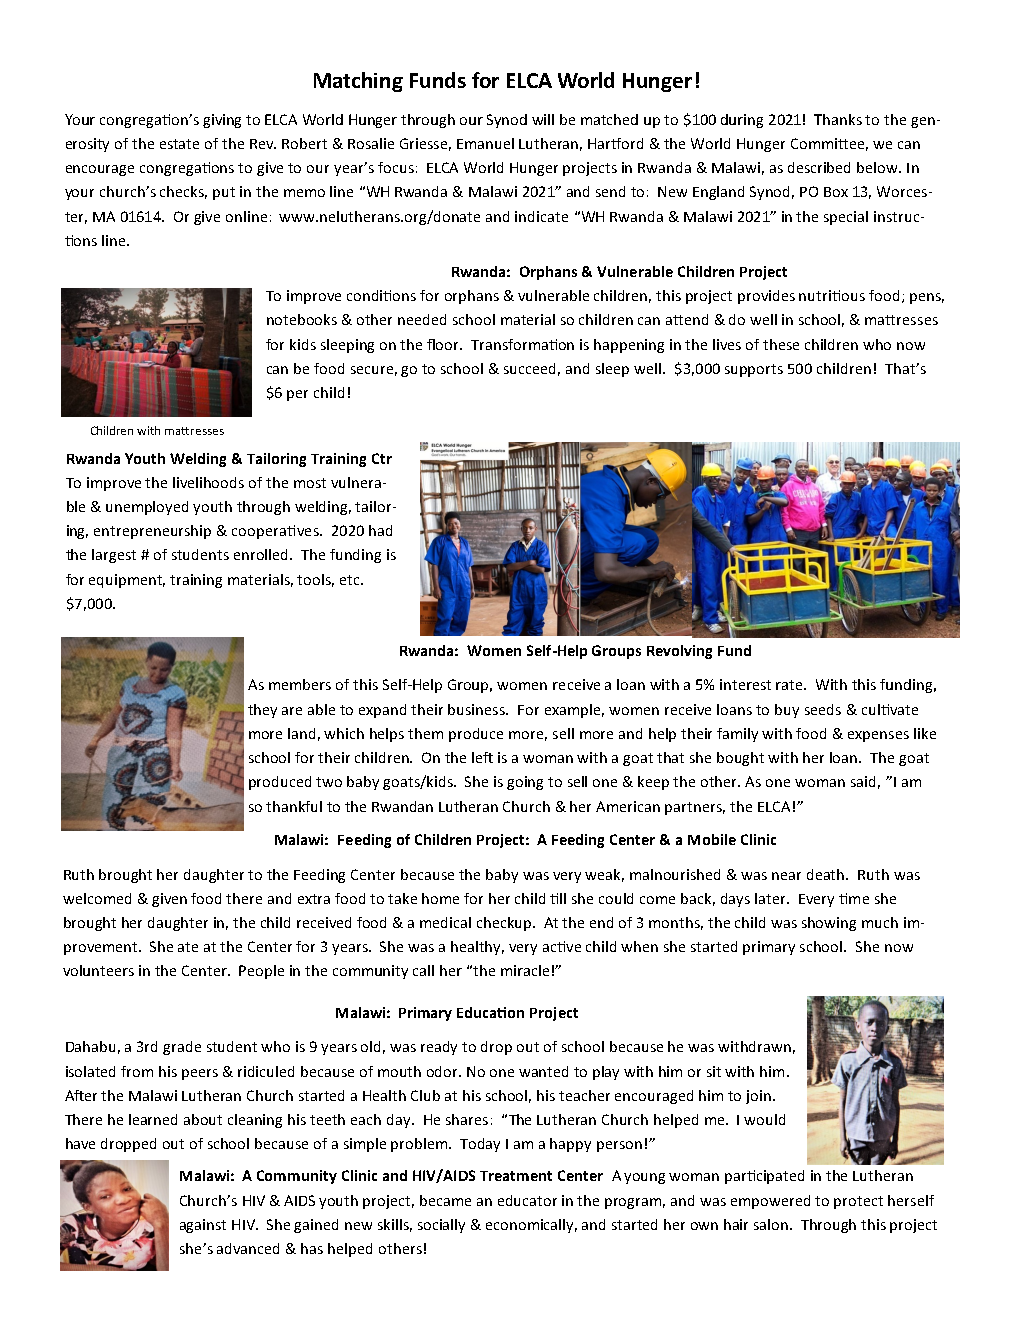 Website for WH Rwanda Malawi 2021 test 2